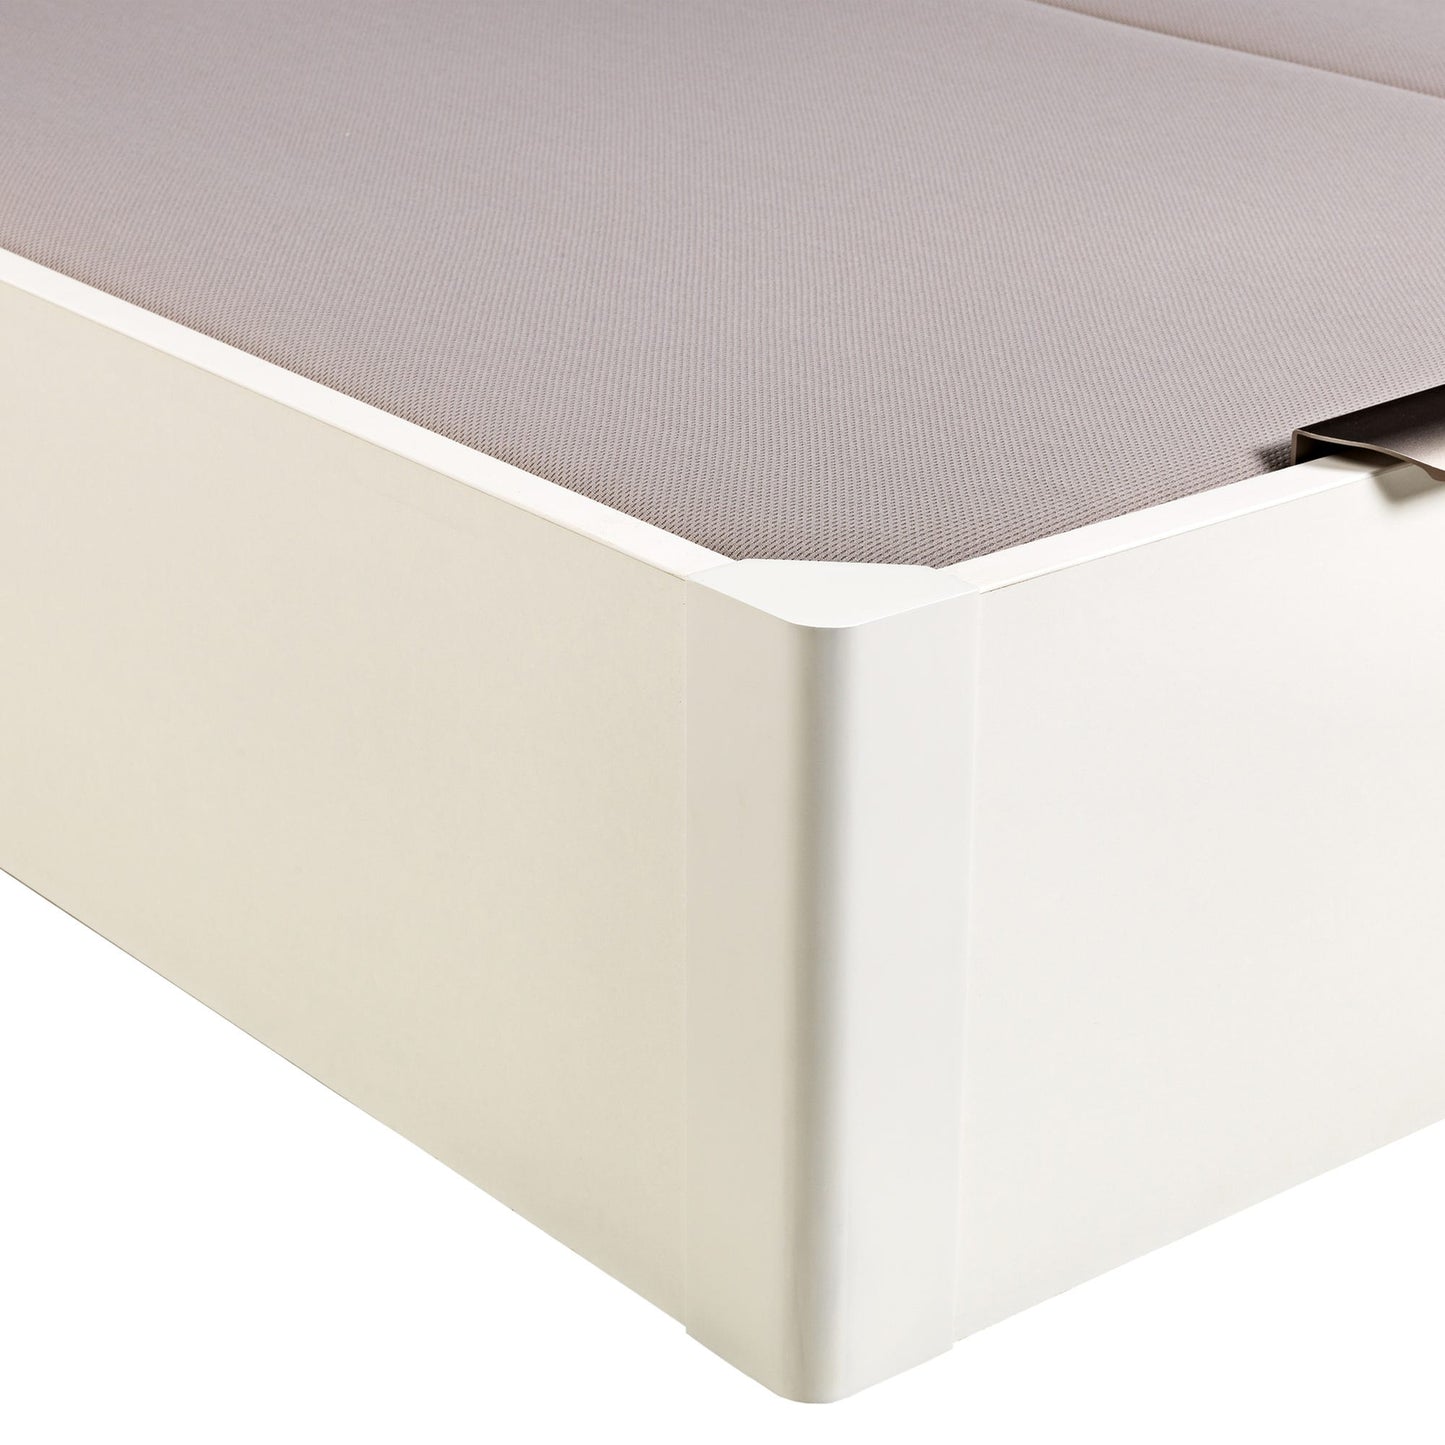 Canapé abatible de madera de tapa doble de color blanco - DESIGN - 200x210